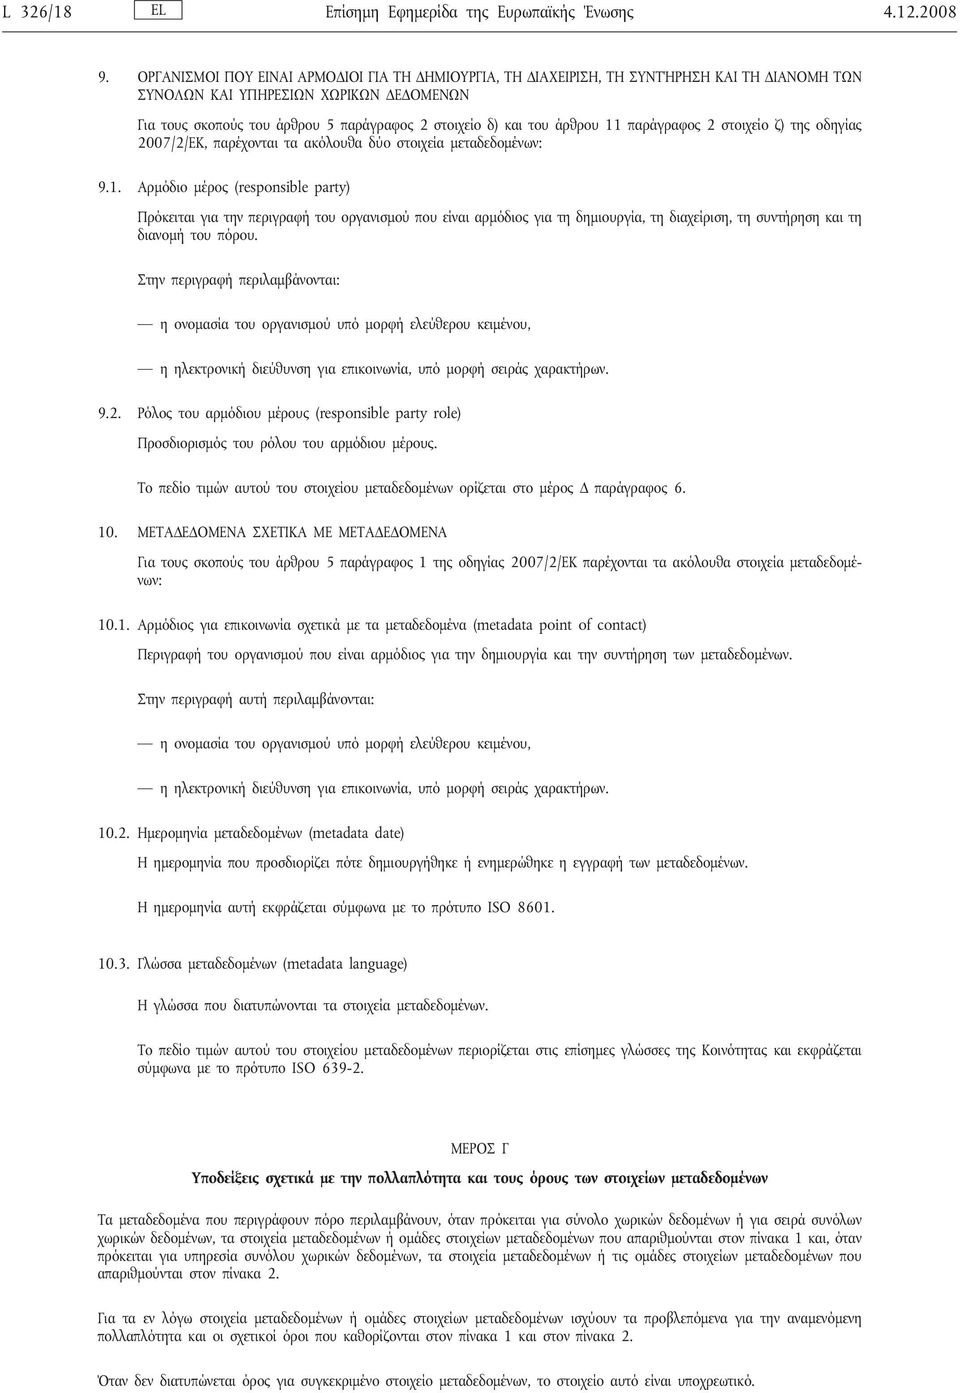 άρθρου 11 παράγραφος 2 στοιχείο ζ) της οδηγίας 2007/2/ΕΚ, παρέχονται τα ακόλουθα δύο στοιχεία μεταδεδομένων: 9.1. Αρμόδιο μέρος (responsible party) Πρόκειται για την περιγραφή του οργανισμού που είναι αρμόδιος για τη δημιουργία, τη διαχείριση, τη συντήρηση και τη διανομή του πόρου.